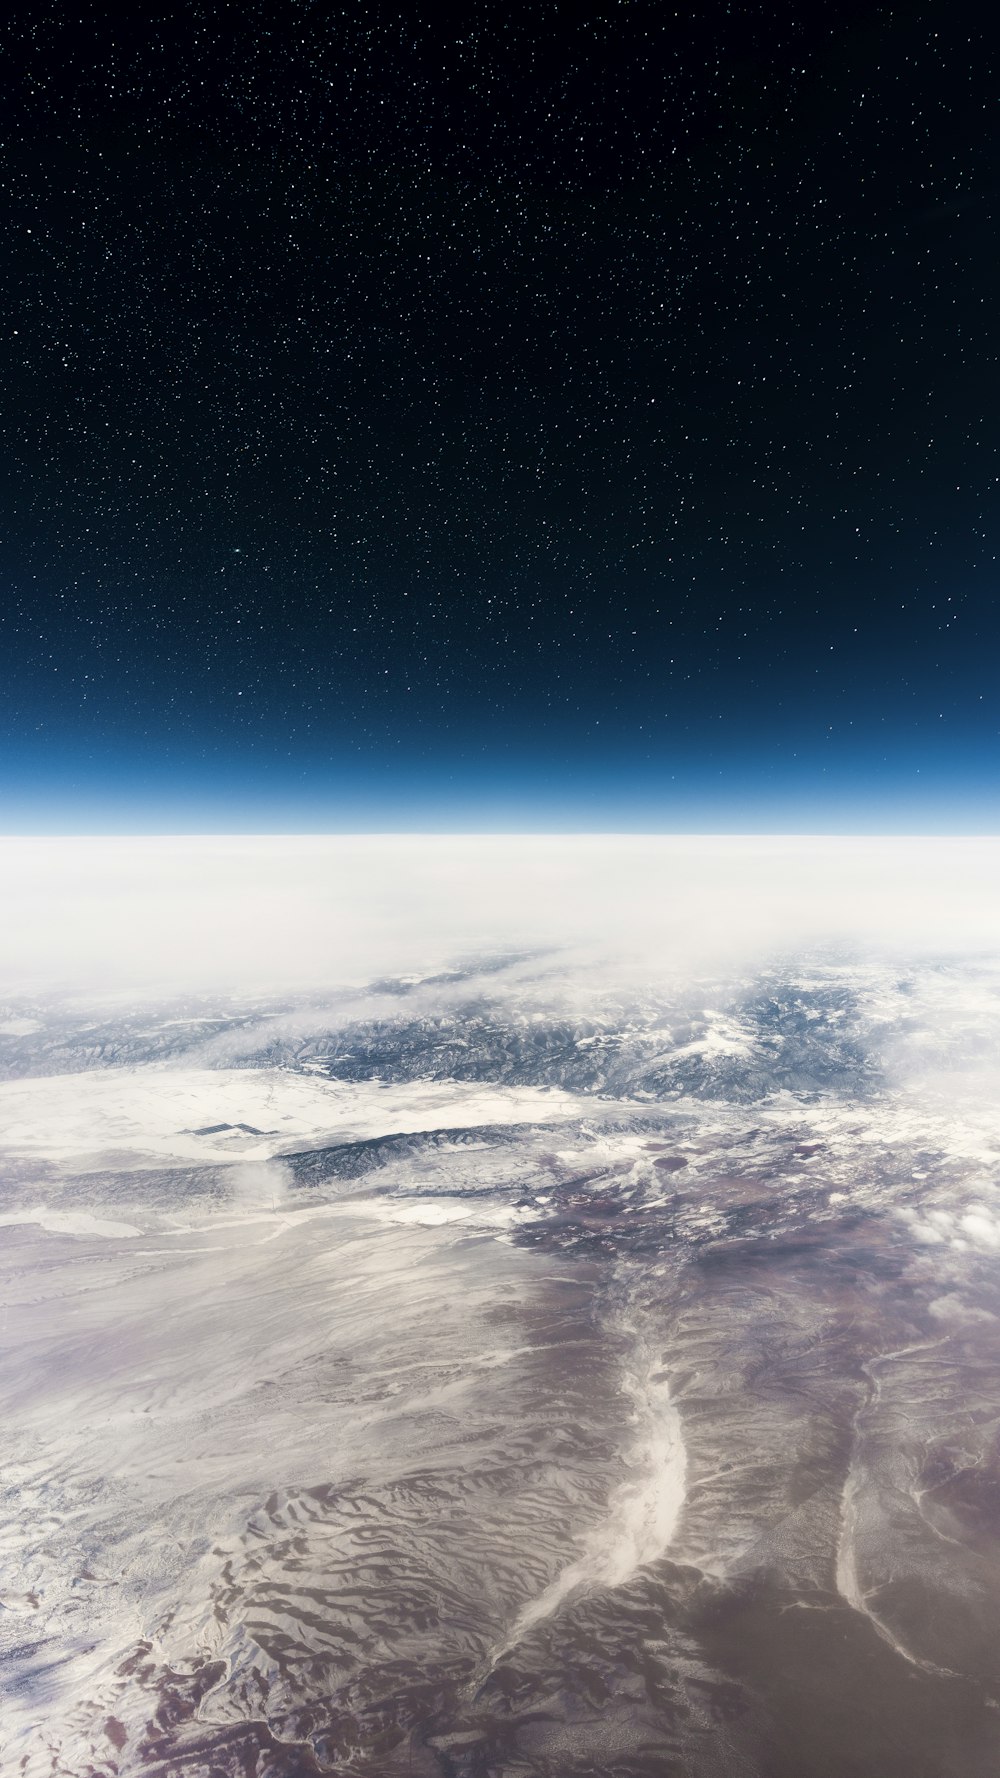 Vue de la Terre dans l’espace extra-atmosphérique